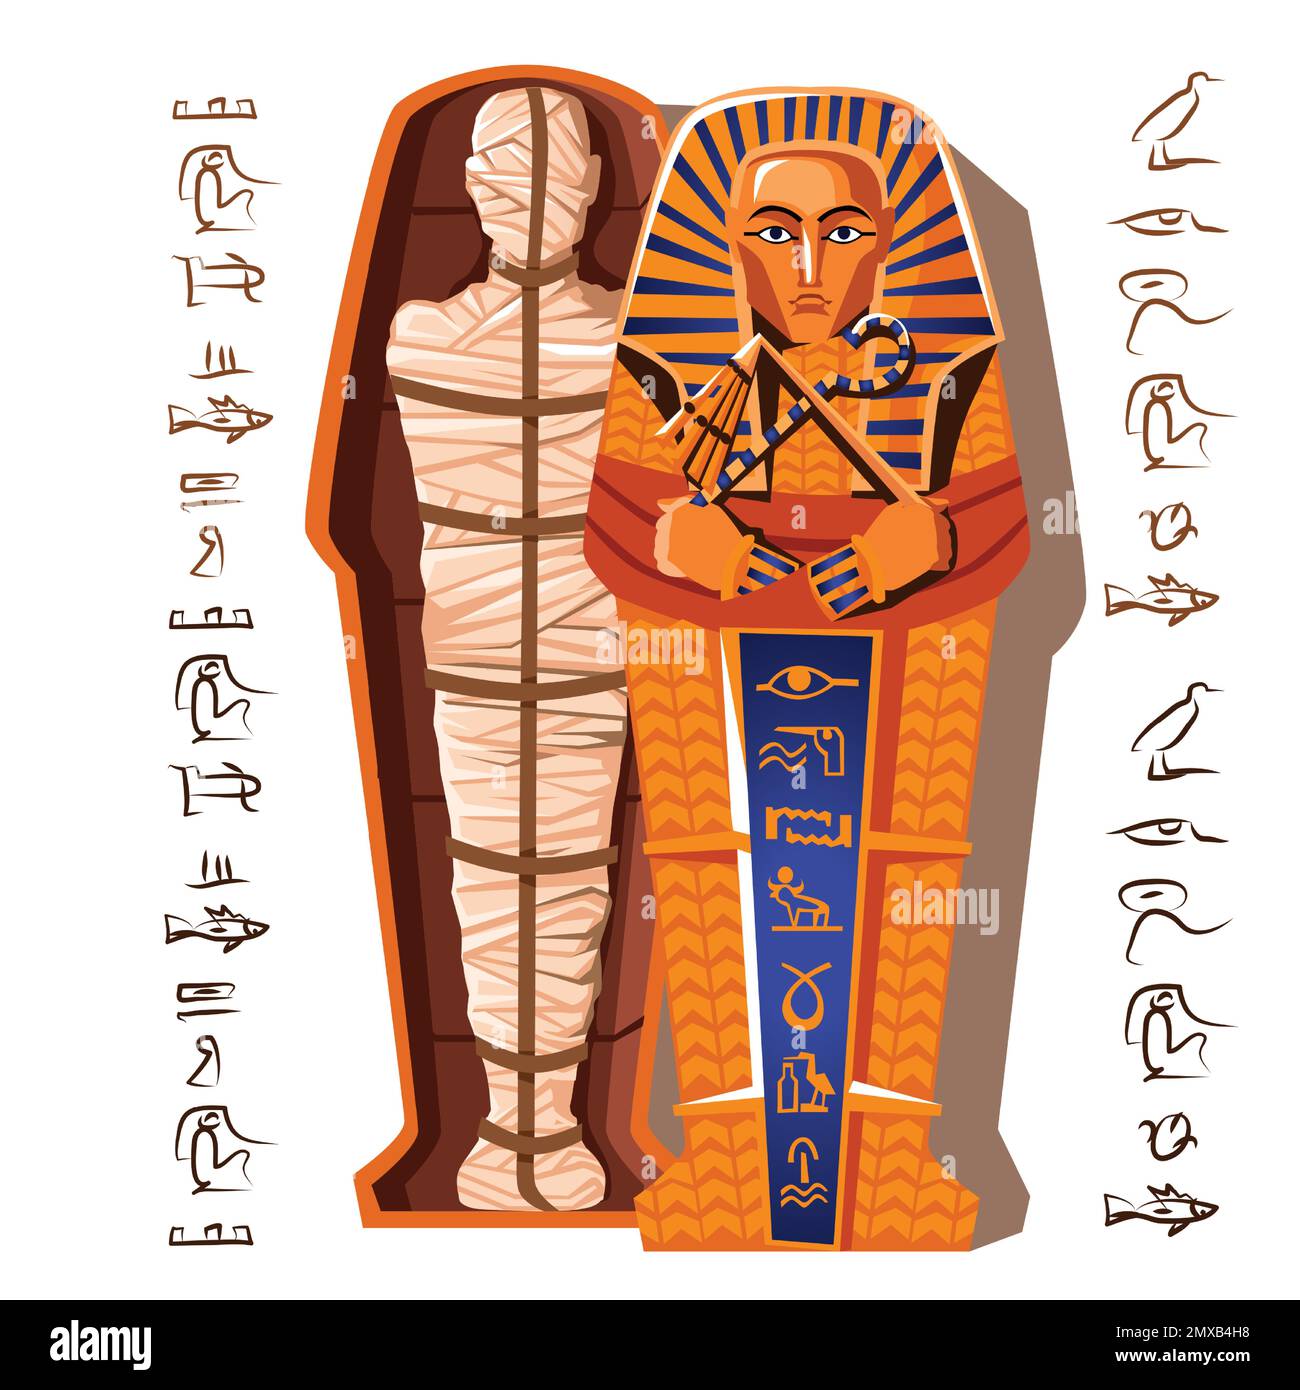 Pharao-Mumie-Cartoon-Vektordarstellung. Ende des Mumifizierungsprozesses, Einbalsamierung des Toten, menschliche Leiche wird mit Leinen umhüllt und in Sarkophag gelegt. Kult der Toten aus dem alten Ägypten Stock Vektor